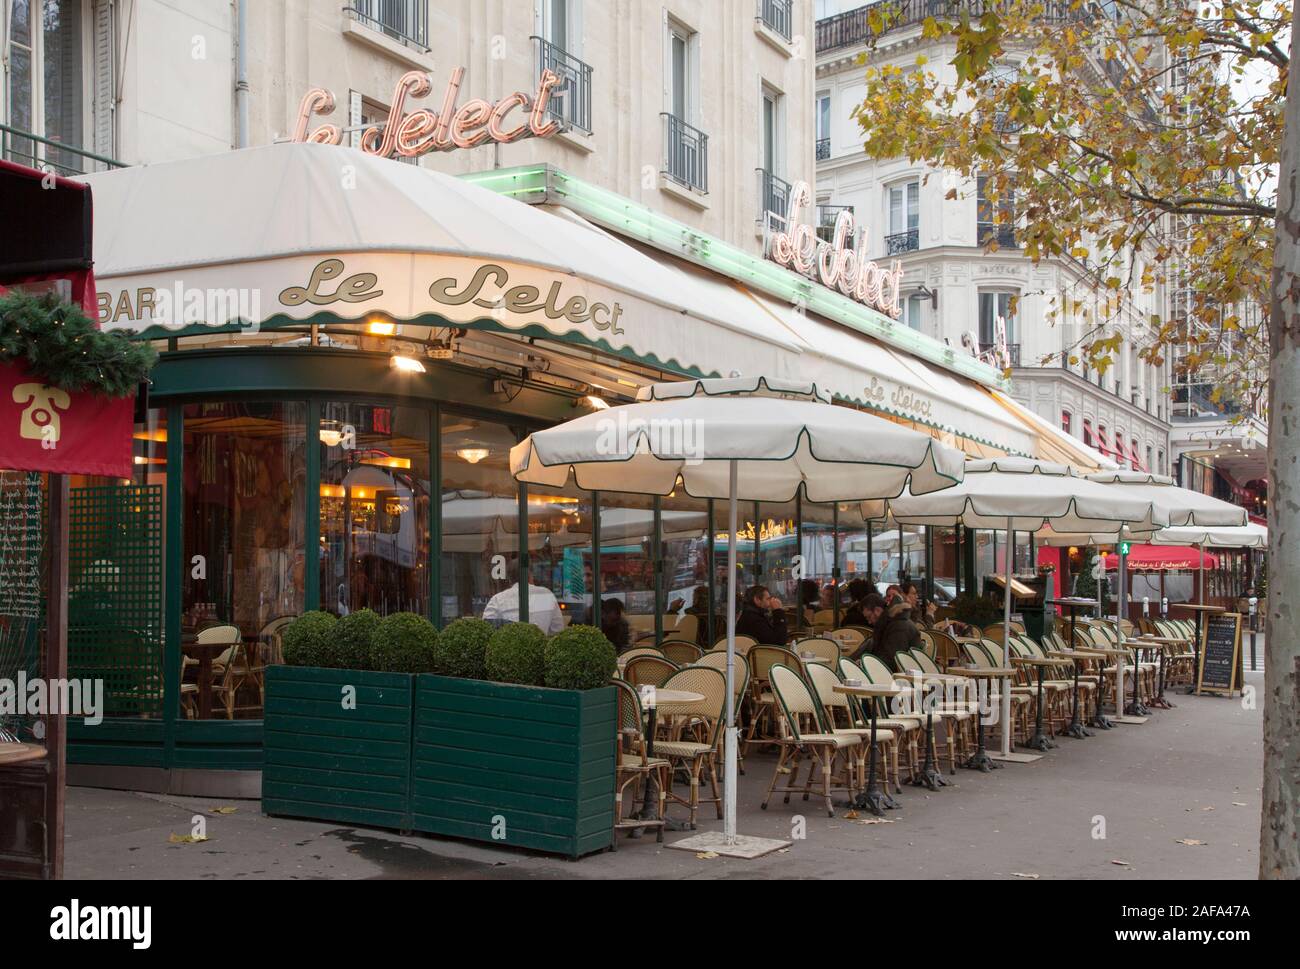 Le Select è una brasserie parigina fondata nel 1923 famoso come uno dei caffè di artisti e intellettuali tra cui Picasso ed Hemingway Foto Stock